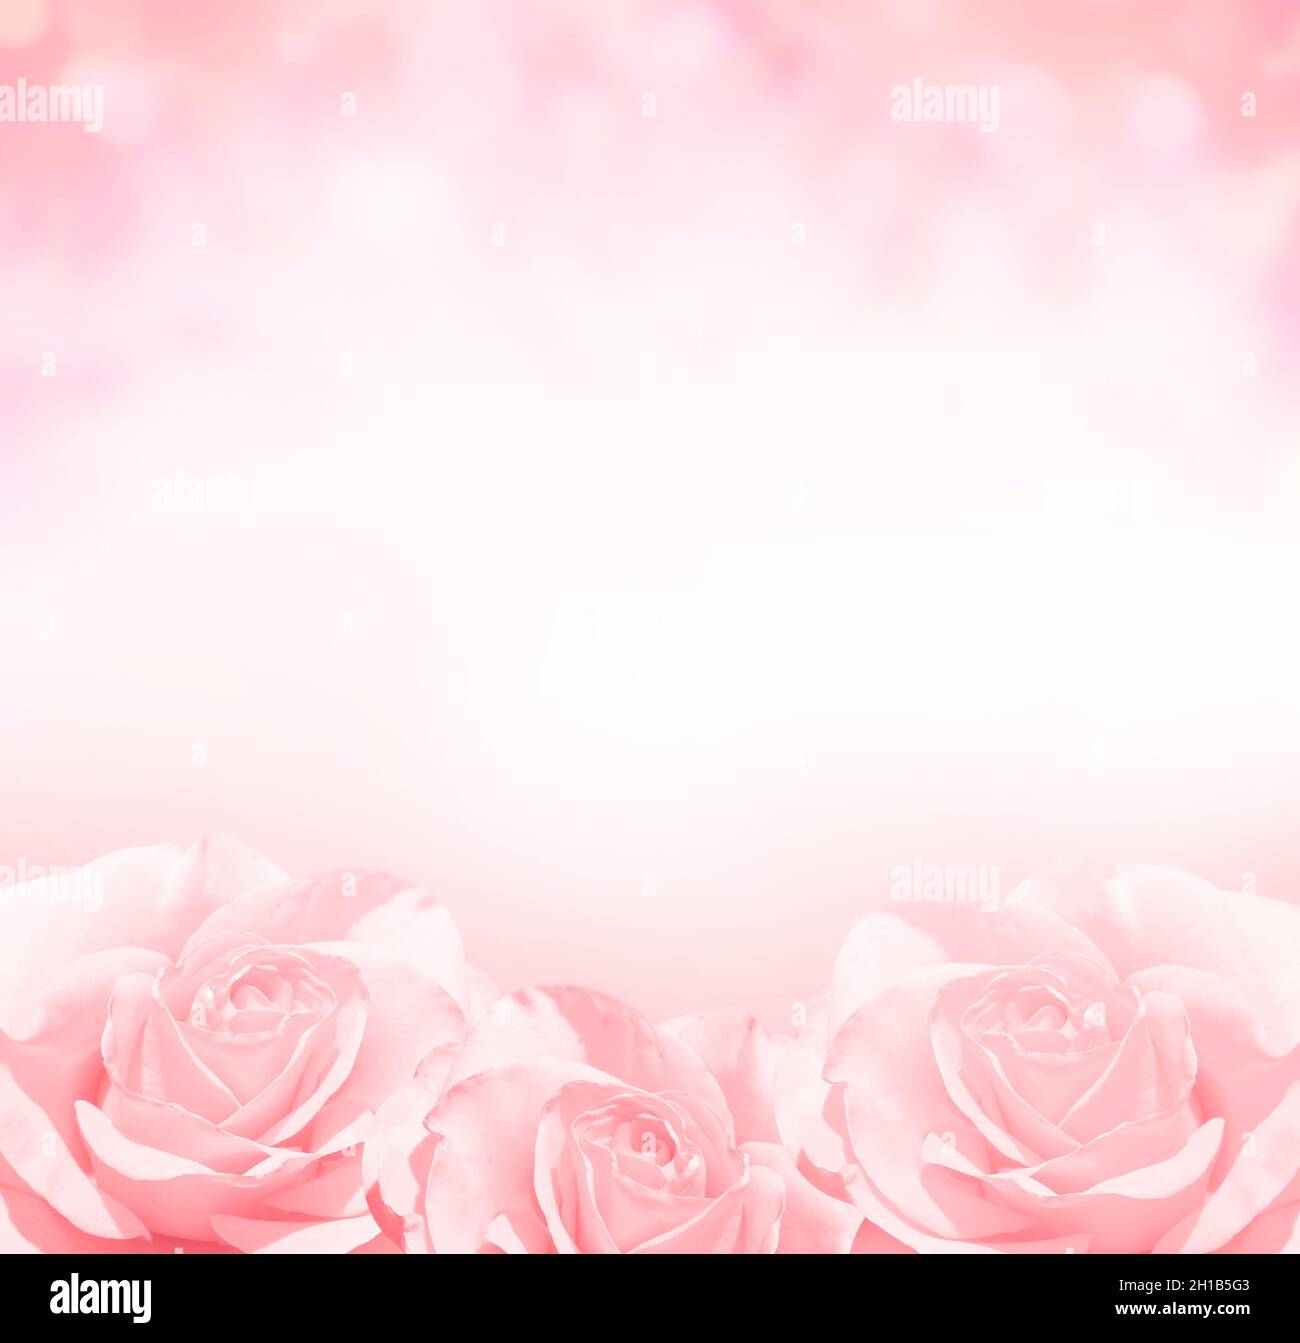 Hình nền hoa hồng mờ với ba bông hồng màu hồng là sự lựa chọn tuyệt vời cho những ai yêu thích sự dịu dàng và nữ tính. Ba bông hồng được sắp xếp tinh tế, tạo nên một hình ảnh đầy sức sống. Hãy click vào hình ảnh để xem chi tiết hơn.